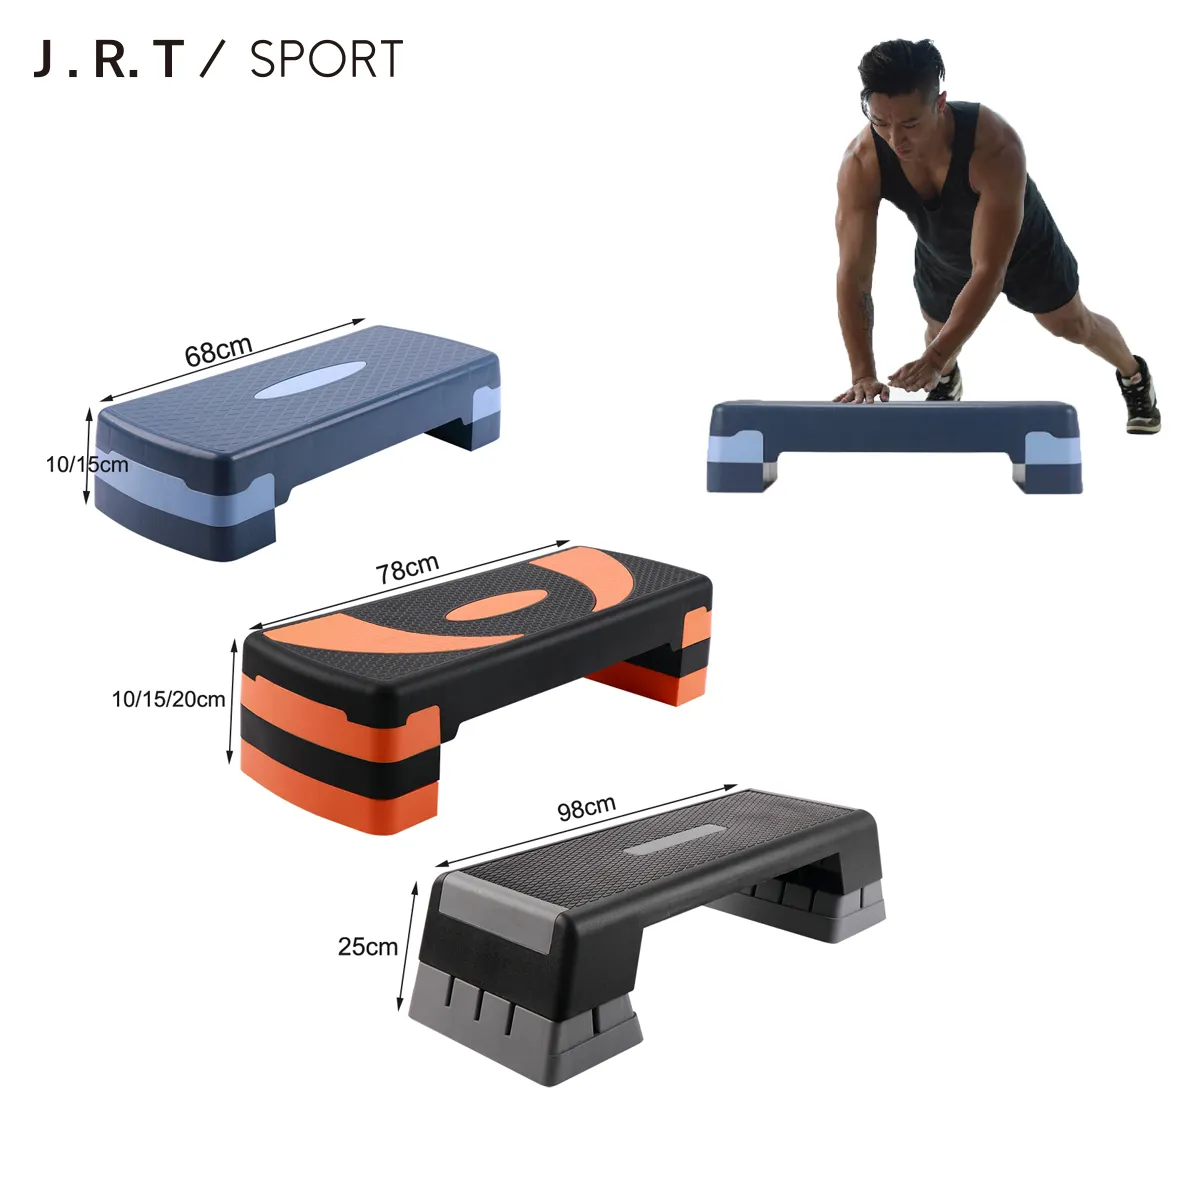 Tập thể dục có thể điều chỉnh Aerobic bước thể thao Hội Đồng Quản Trị/Aerobic bước băng ghế dự bị/Aerobic bước nền tảng nhà tập thể dục